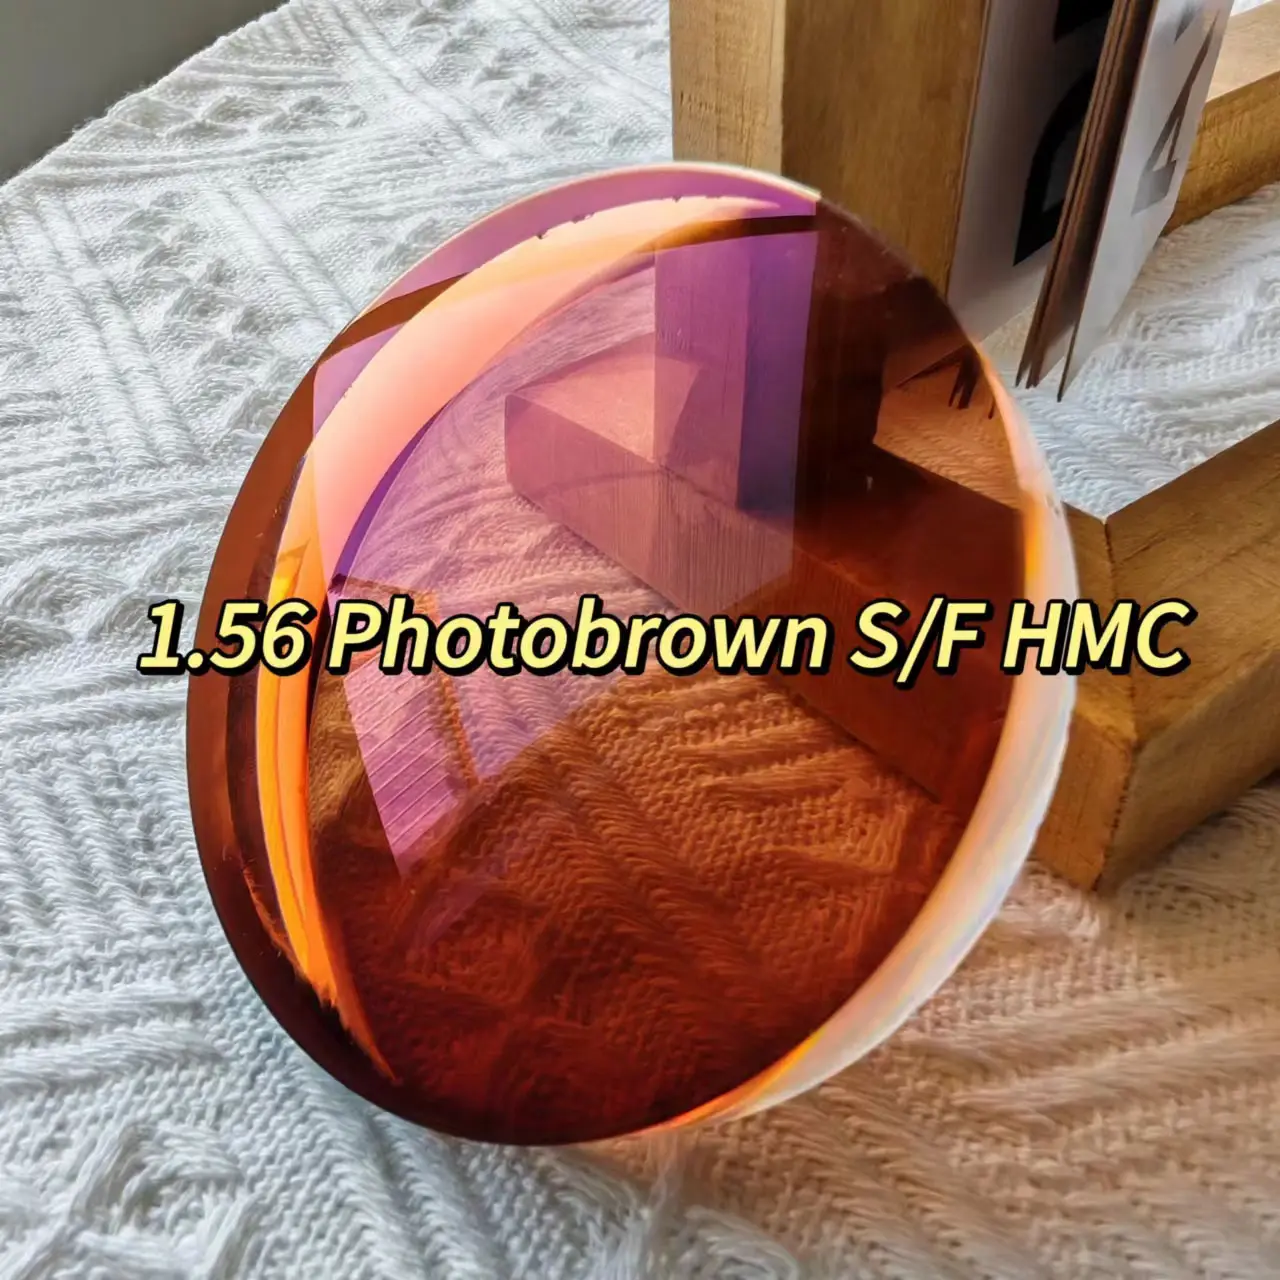 1.56 PhotoBrown S/F HMC โฟโตโครมิกสีน้ําตาลวิสัยทัศน์เดียวเลนส์แสงเคลือบสีเขียวกึ่งสําเร็จรูป